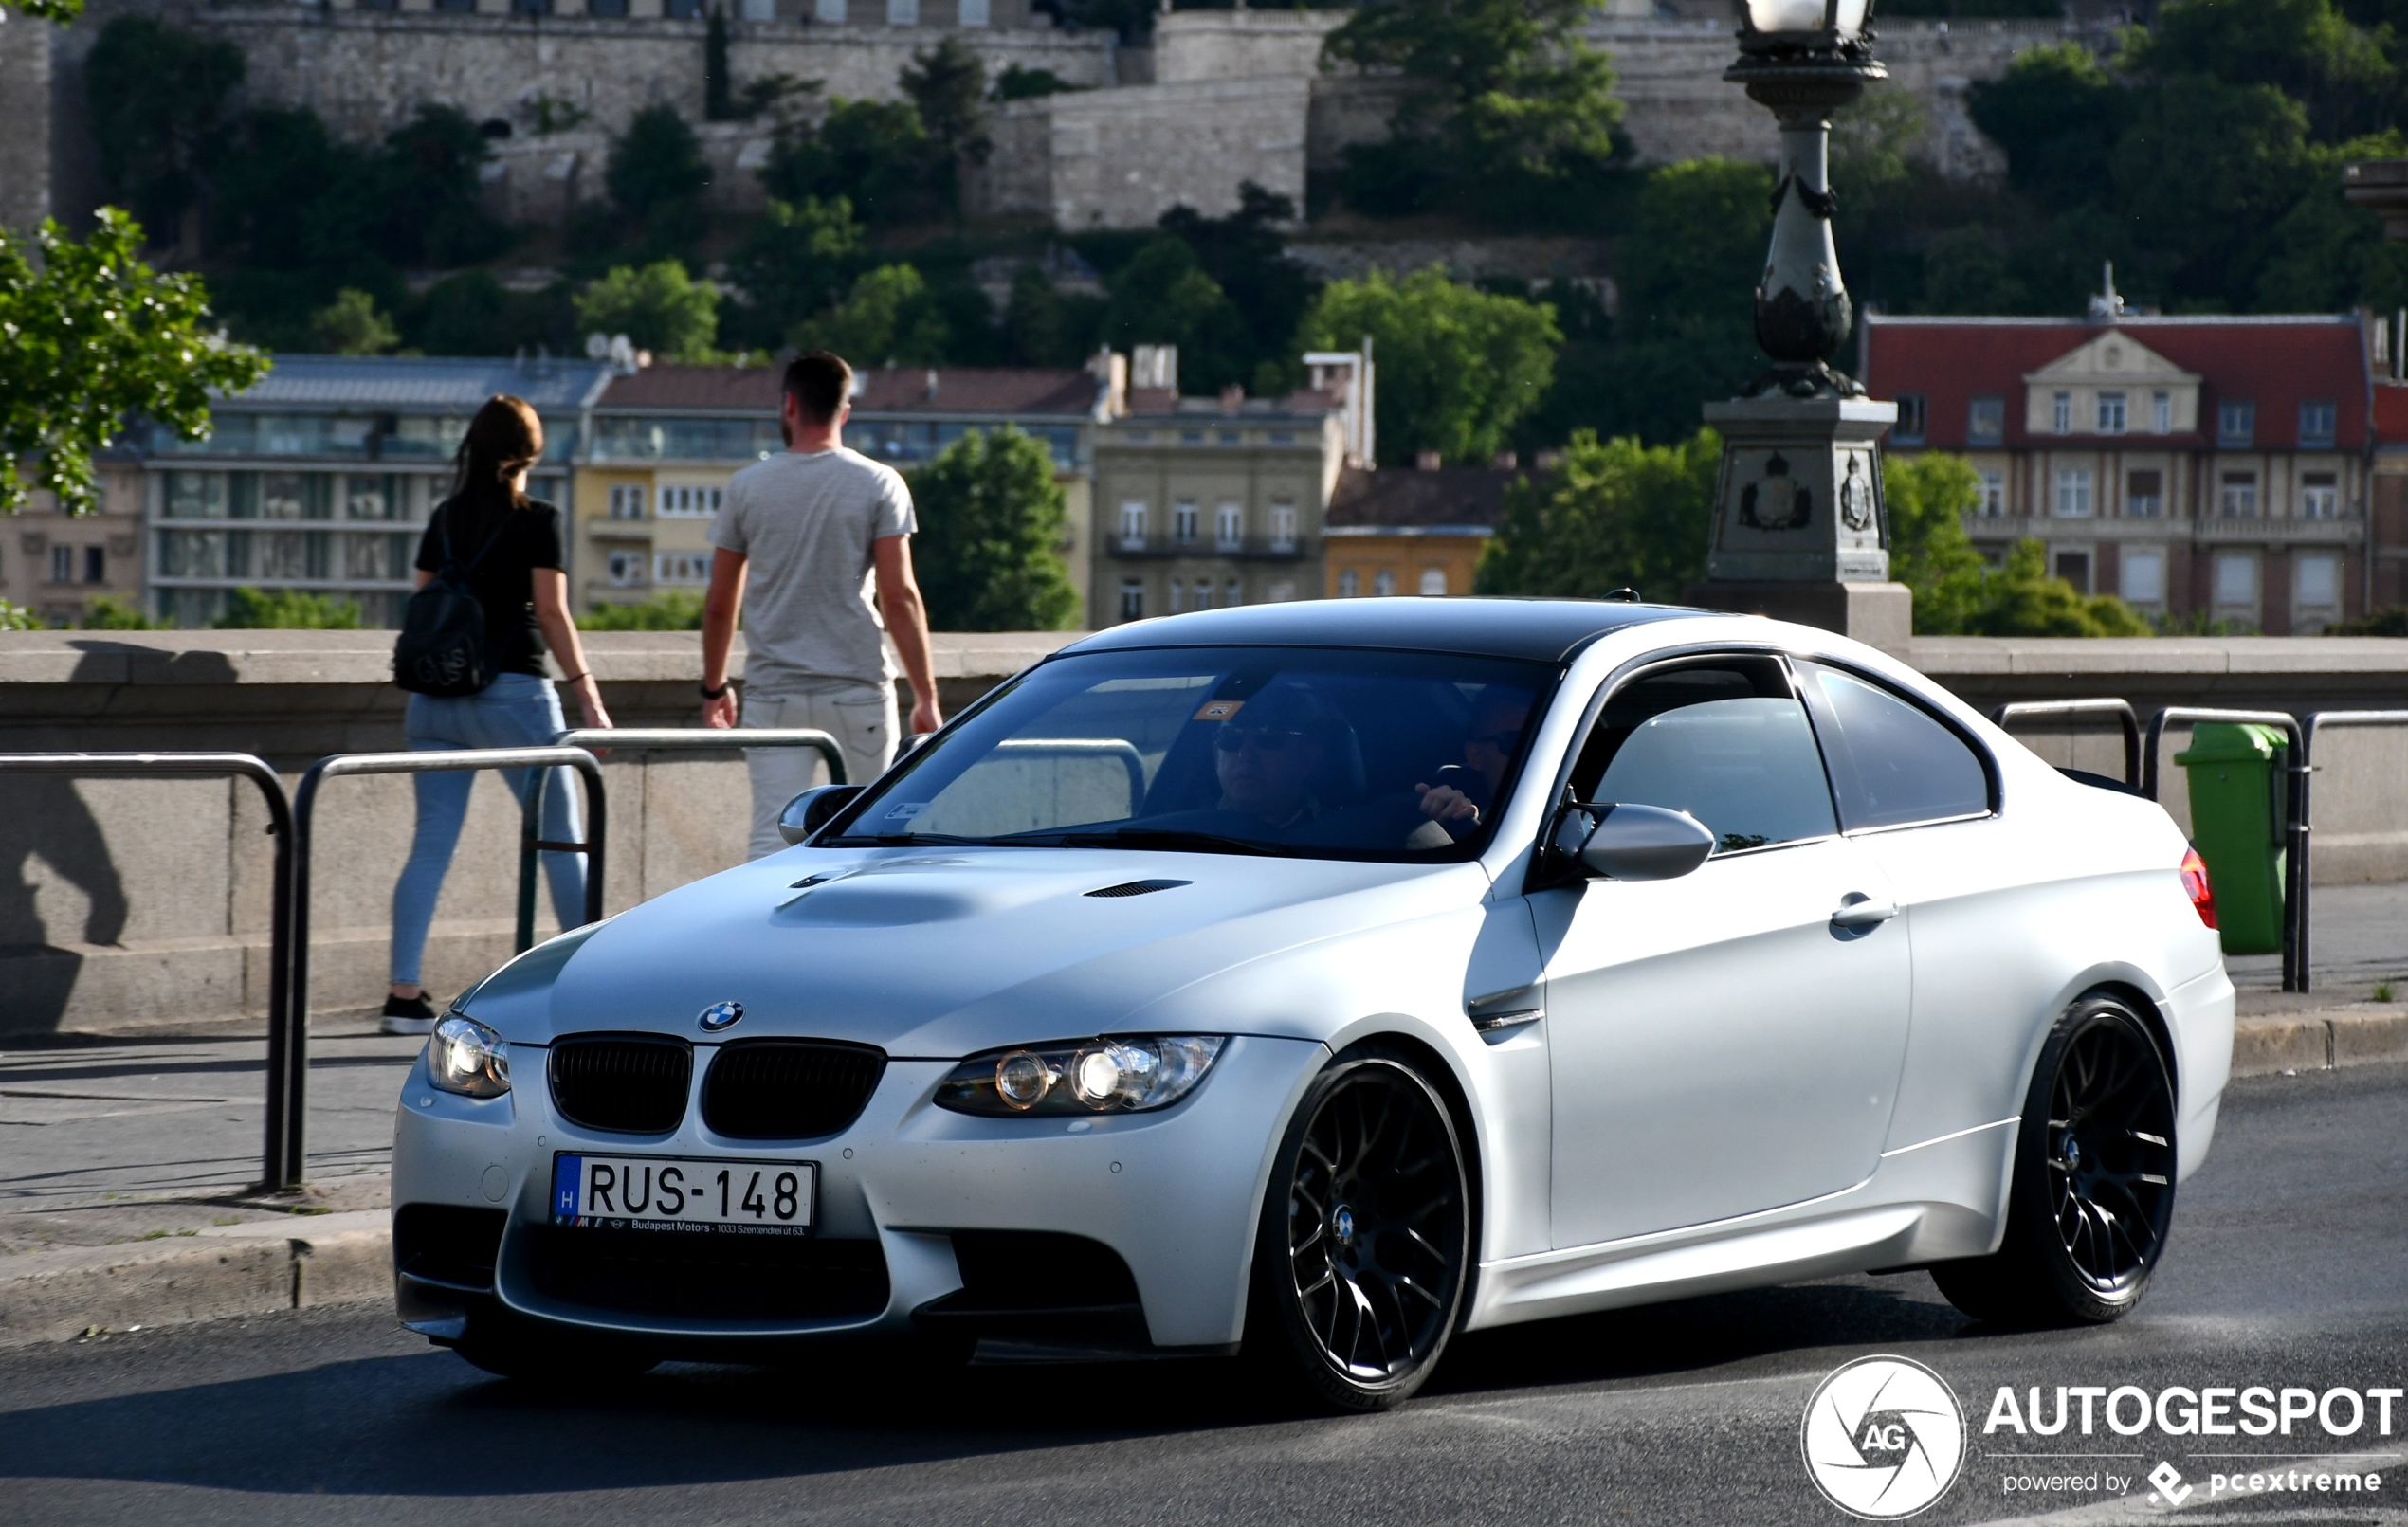 BMW M3 E92 Coupé - 08-06-2020 17:38 - Autogespot